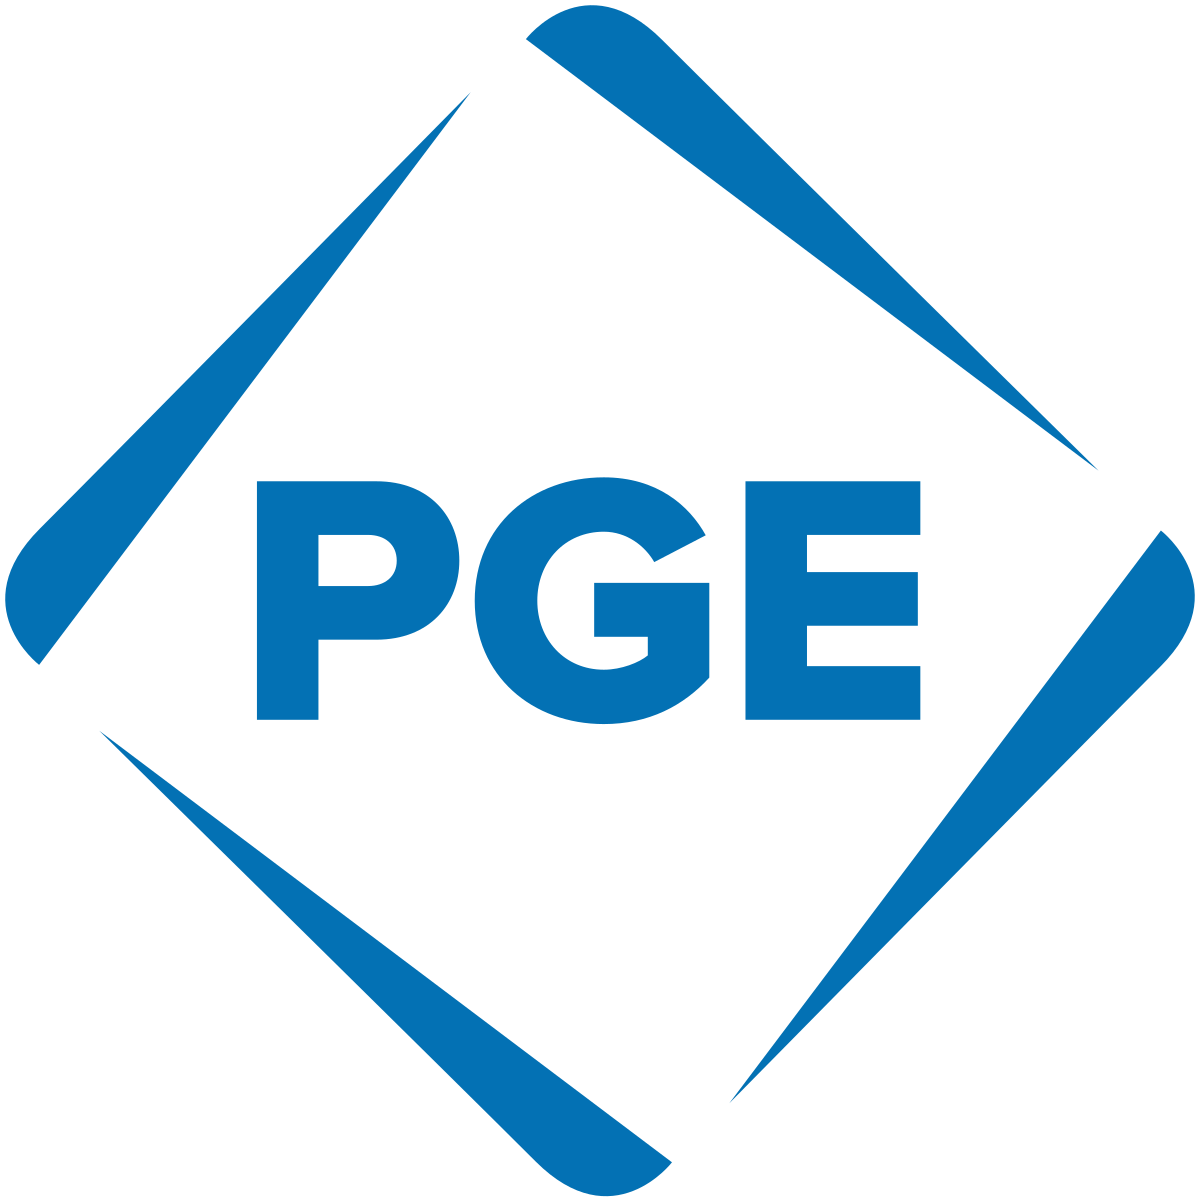 Portland_General_Electric_logo.svg.png